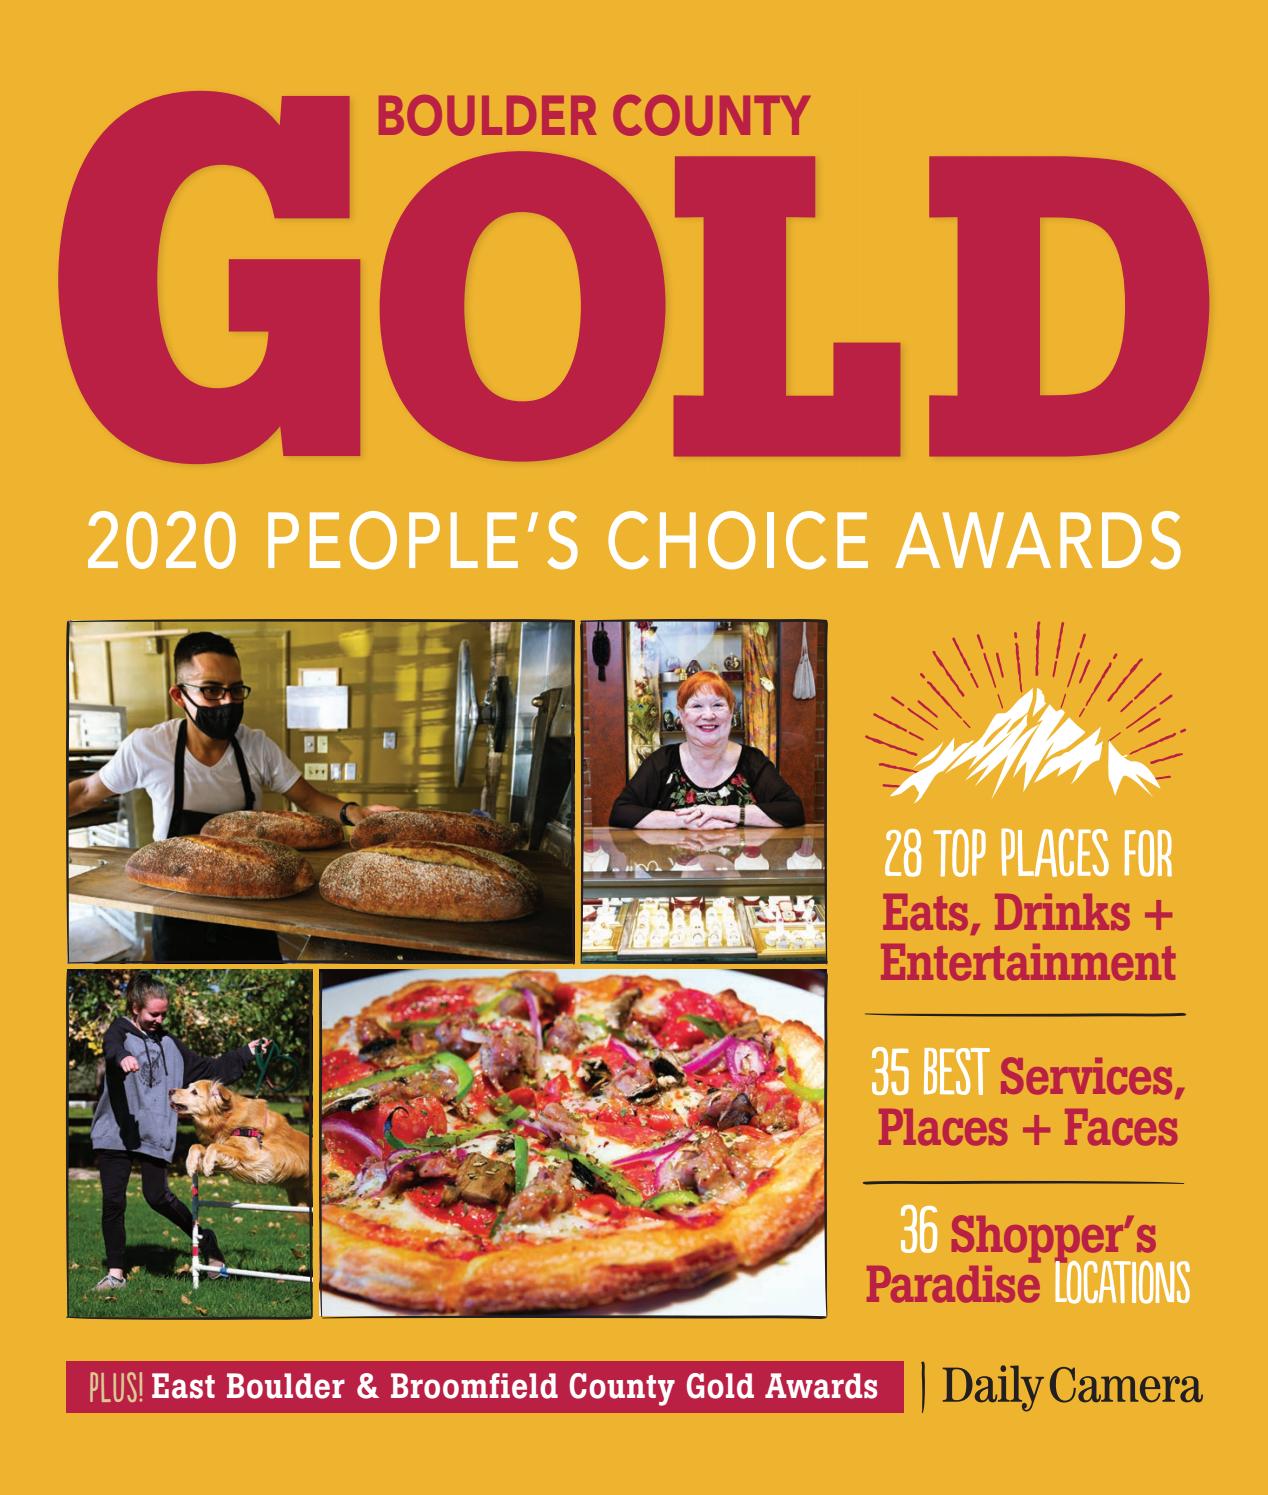 boulder county gold awards 2020